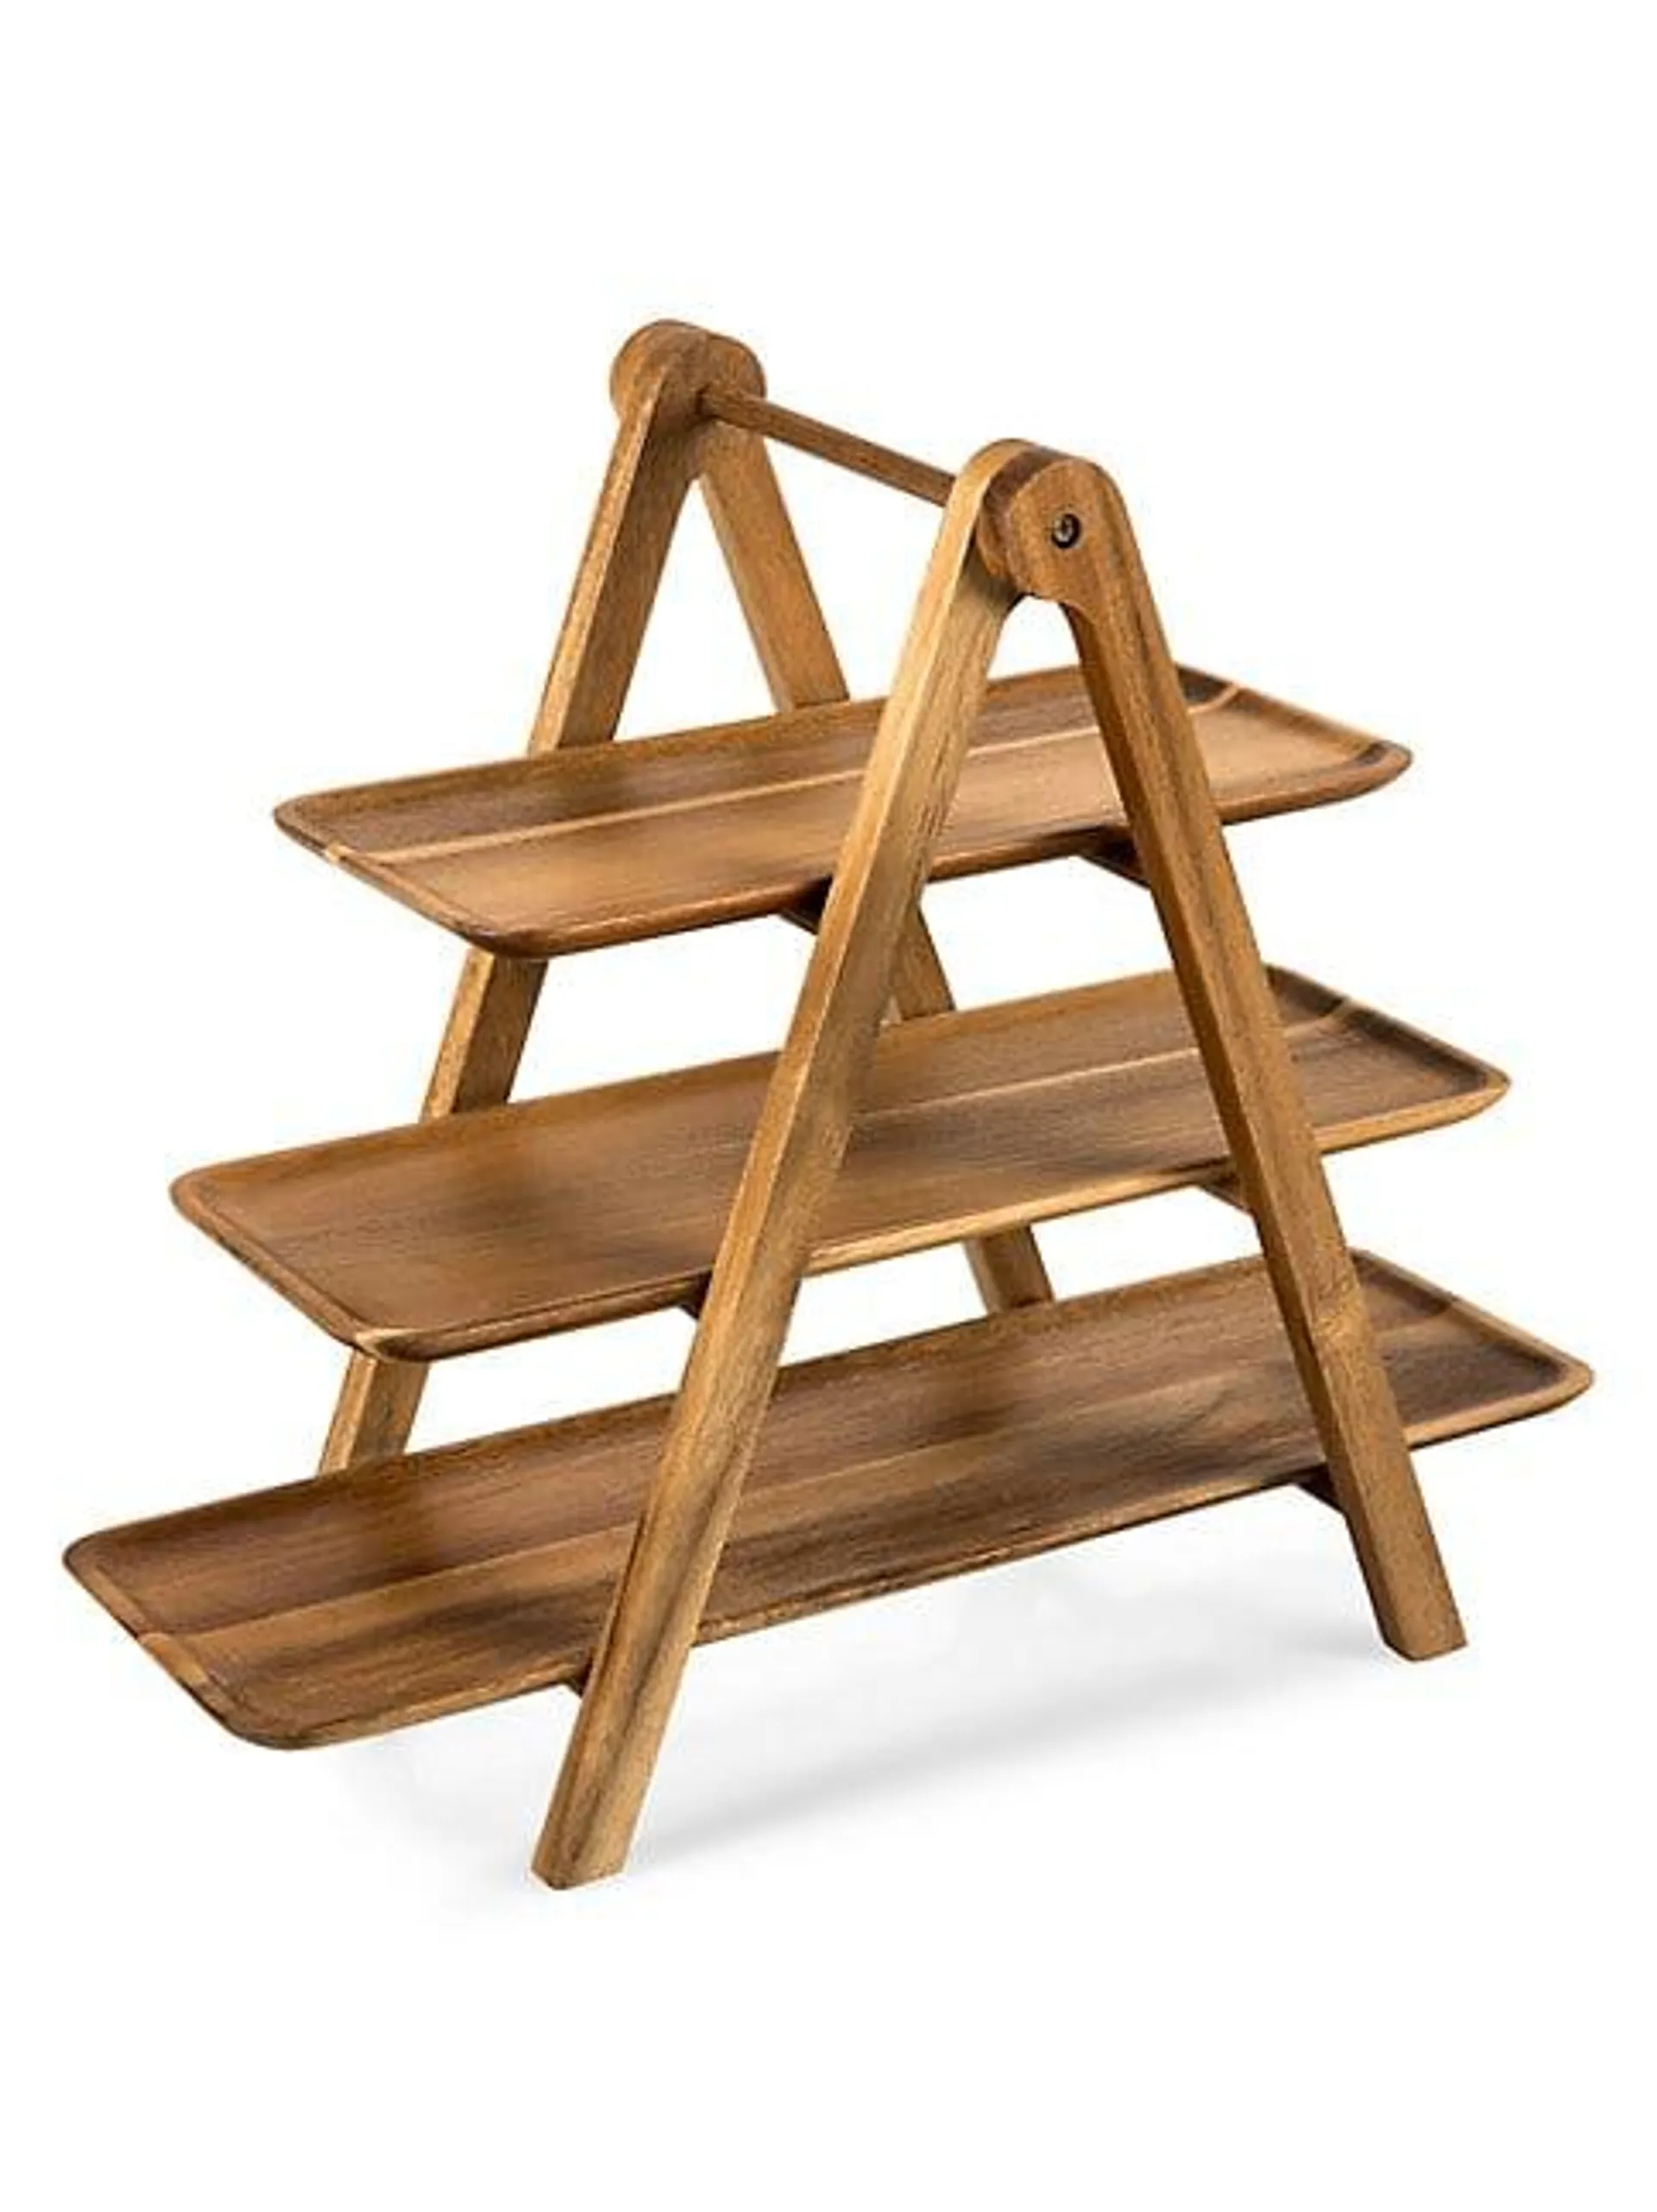 Three-Tier Wooden Serving Ladder